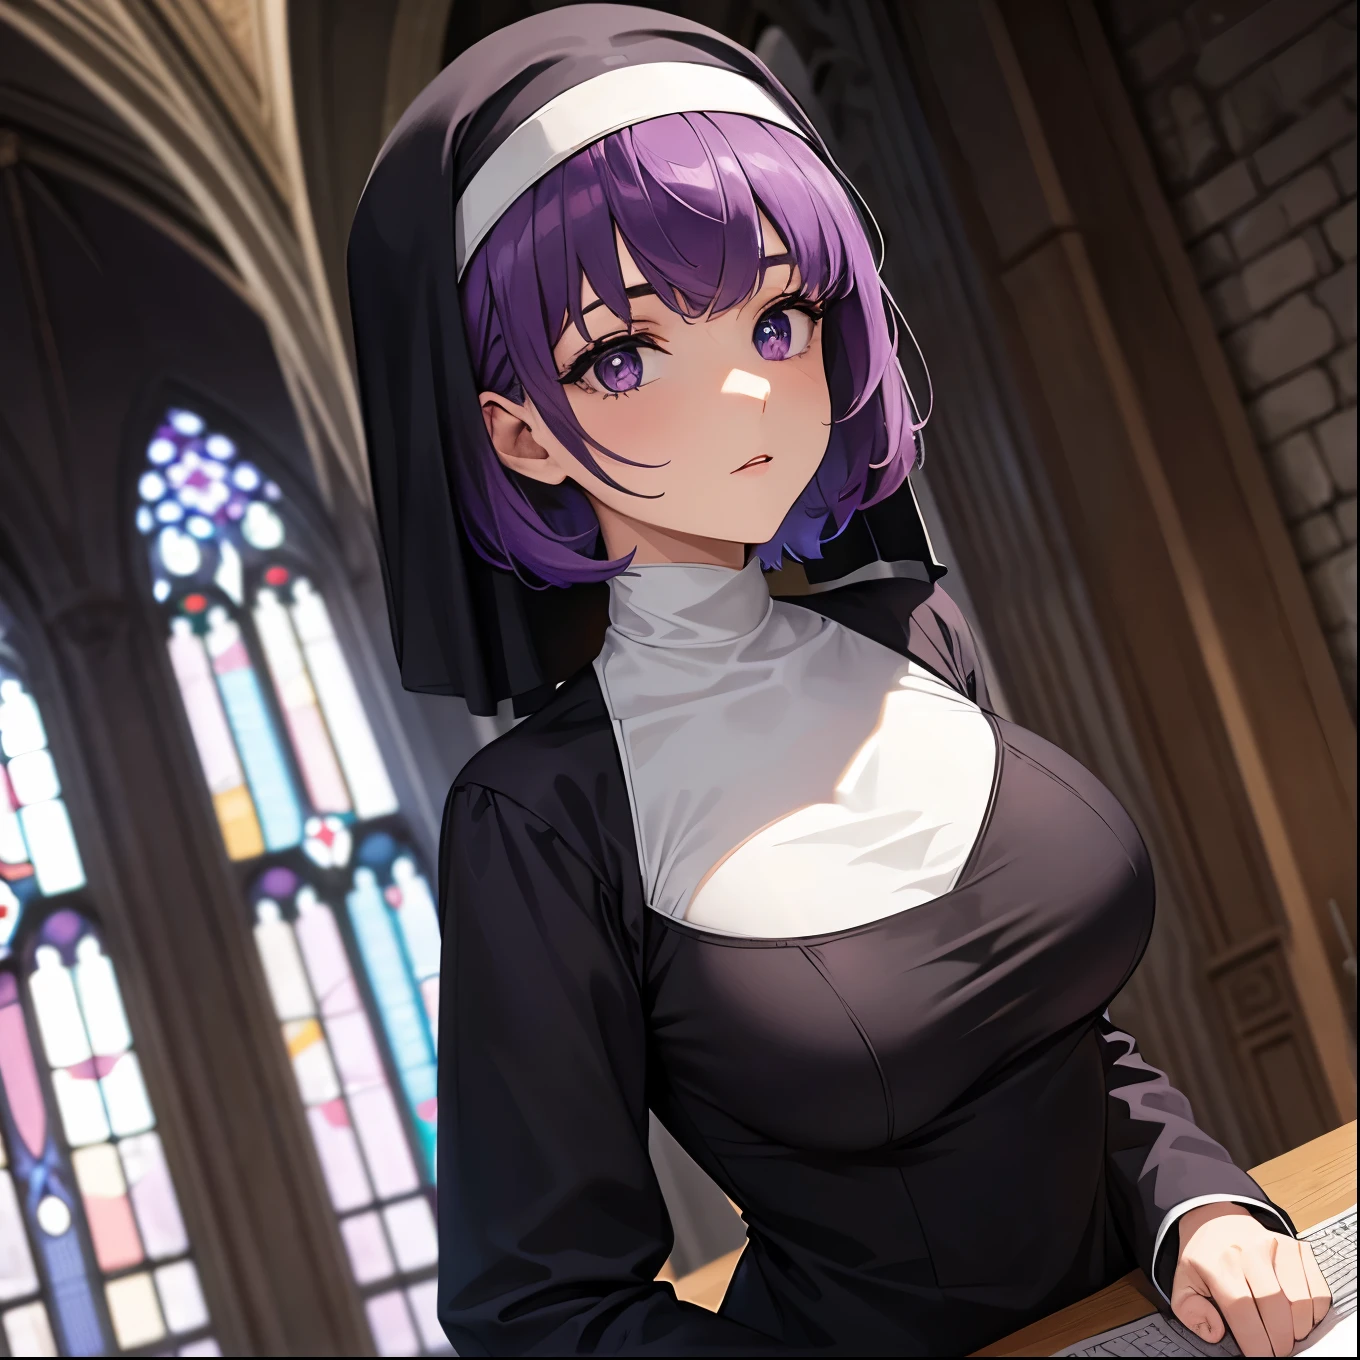 高級, 傑作, 超高解析度, 一個紫色短髮和紫色眼睛的女孩的照片，她穿著修女在教堂裡&#39;服裝, 她仰躺著，展示她的大屁股 